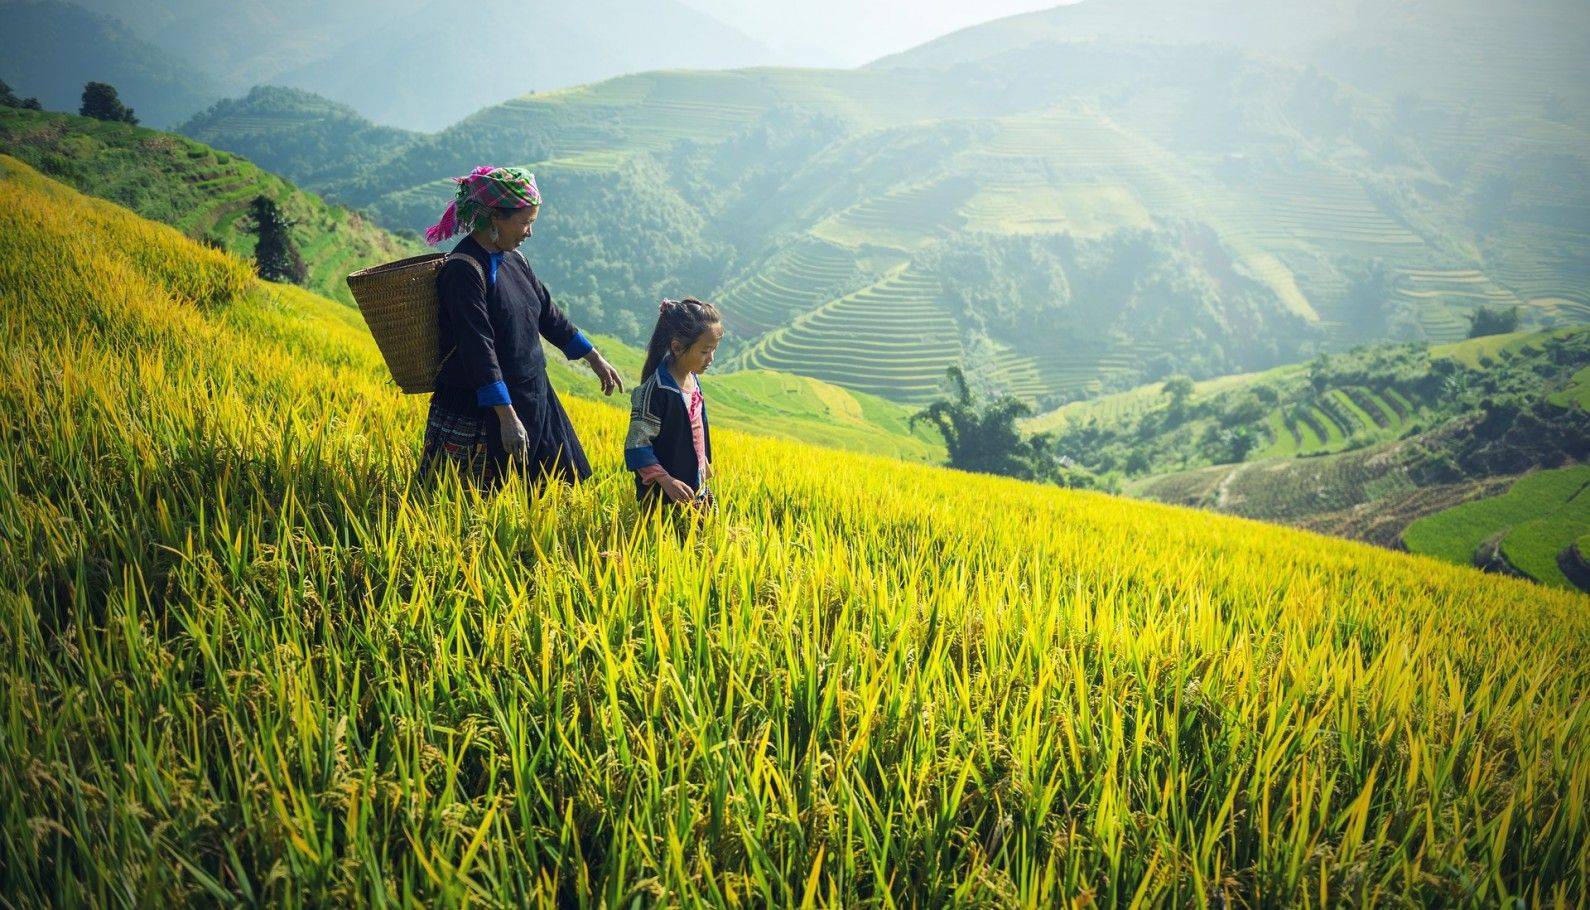 Combiné Laos Vietnam, Ethnies du nord et rizières en terrasse